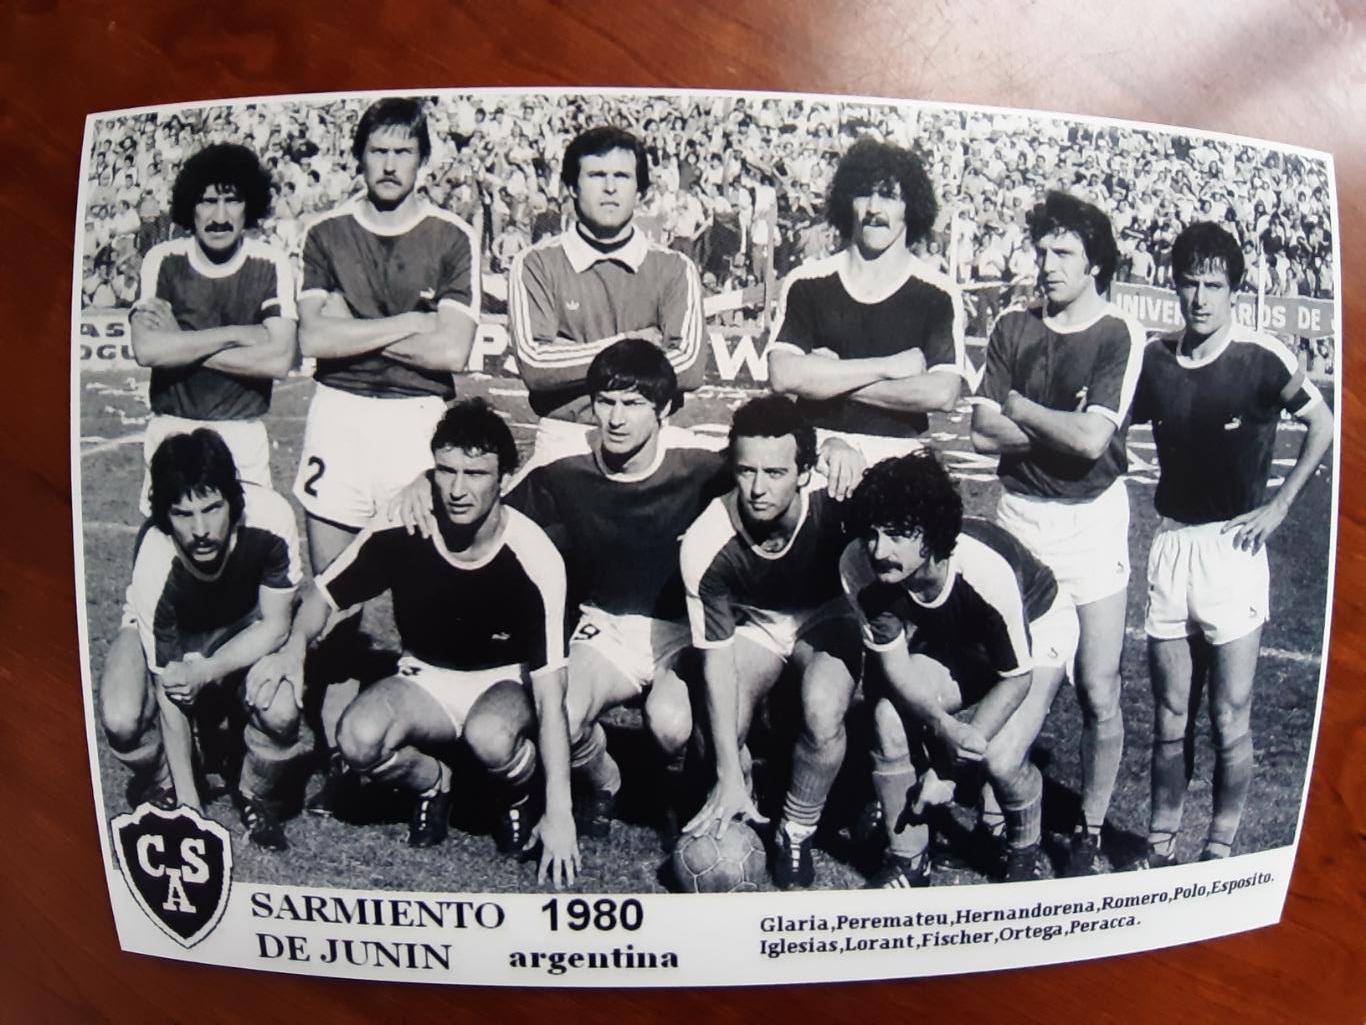 SARMIENTO DE JUNIN 1980 (ARGENTINA)